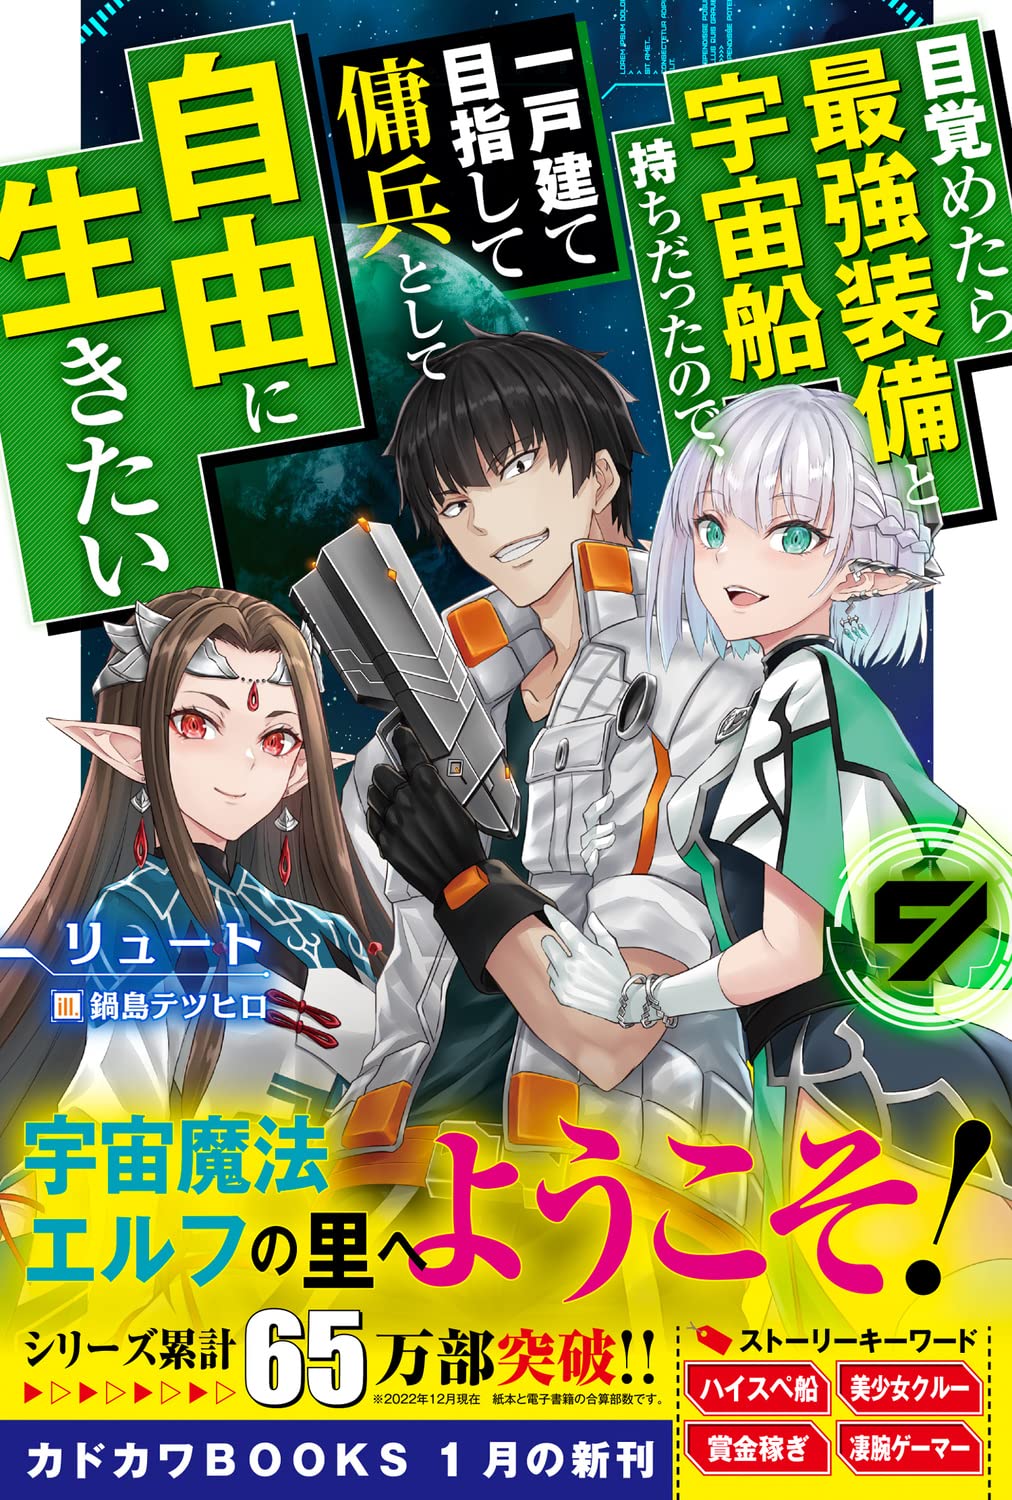 Volume 10 da light novel Otome Game - Giganálise Anime